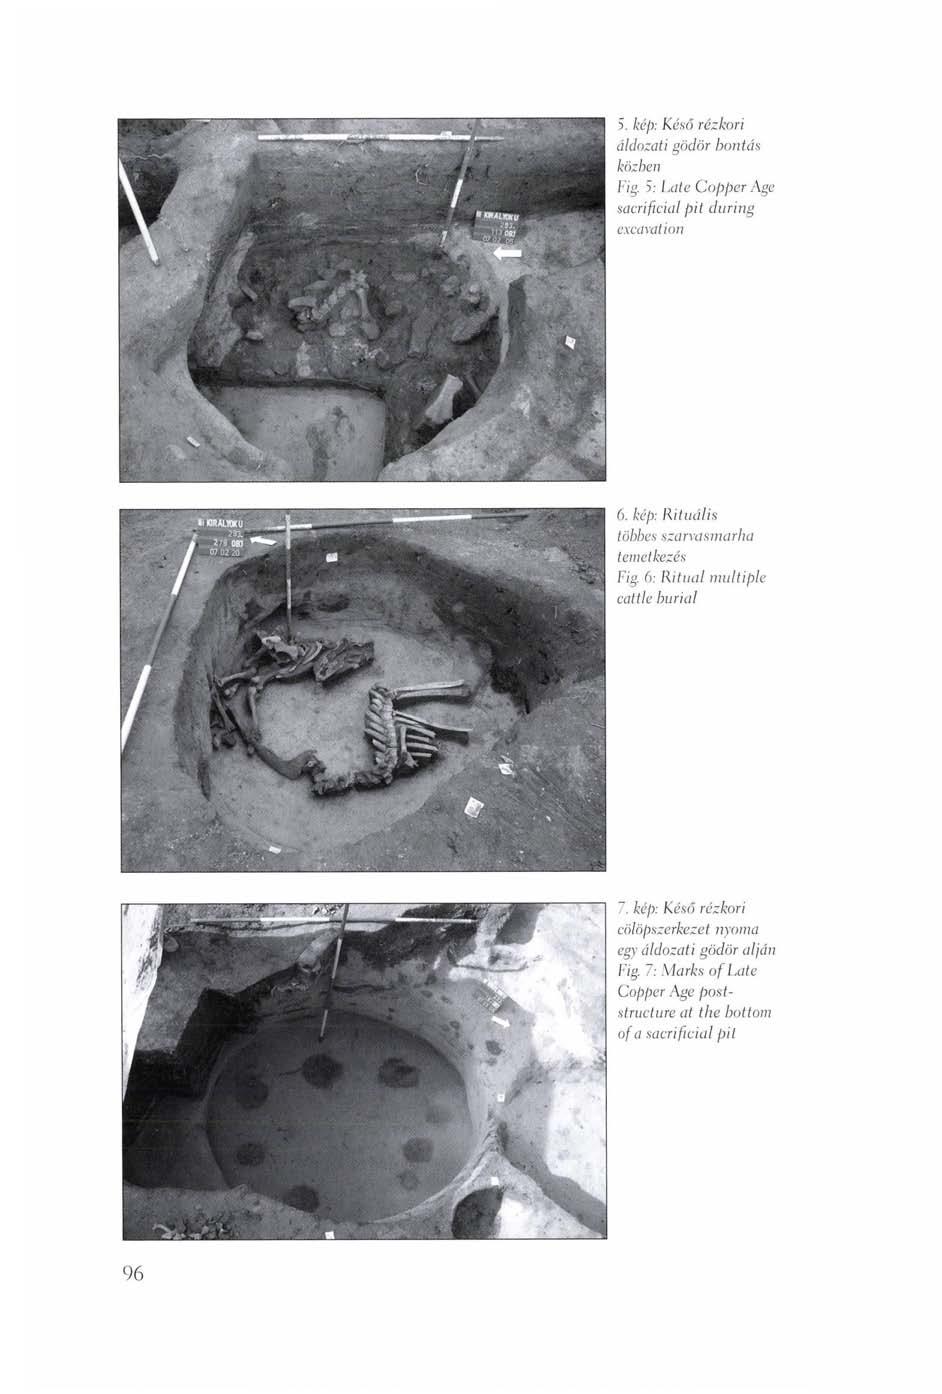 5. kép: Késő rézkori áldozati gödör bontás közben Fig. 5: Late Copper Age sacrificial pit during excavation 6. kép: Rituális többes szarvasmarha temetkezés Fig.